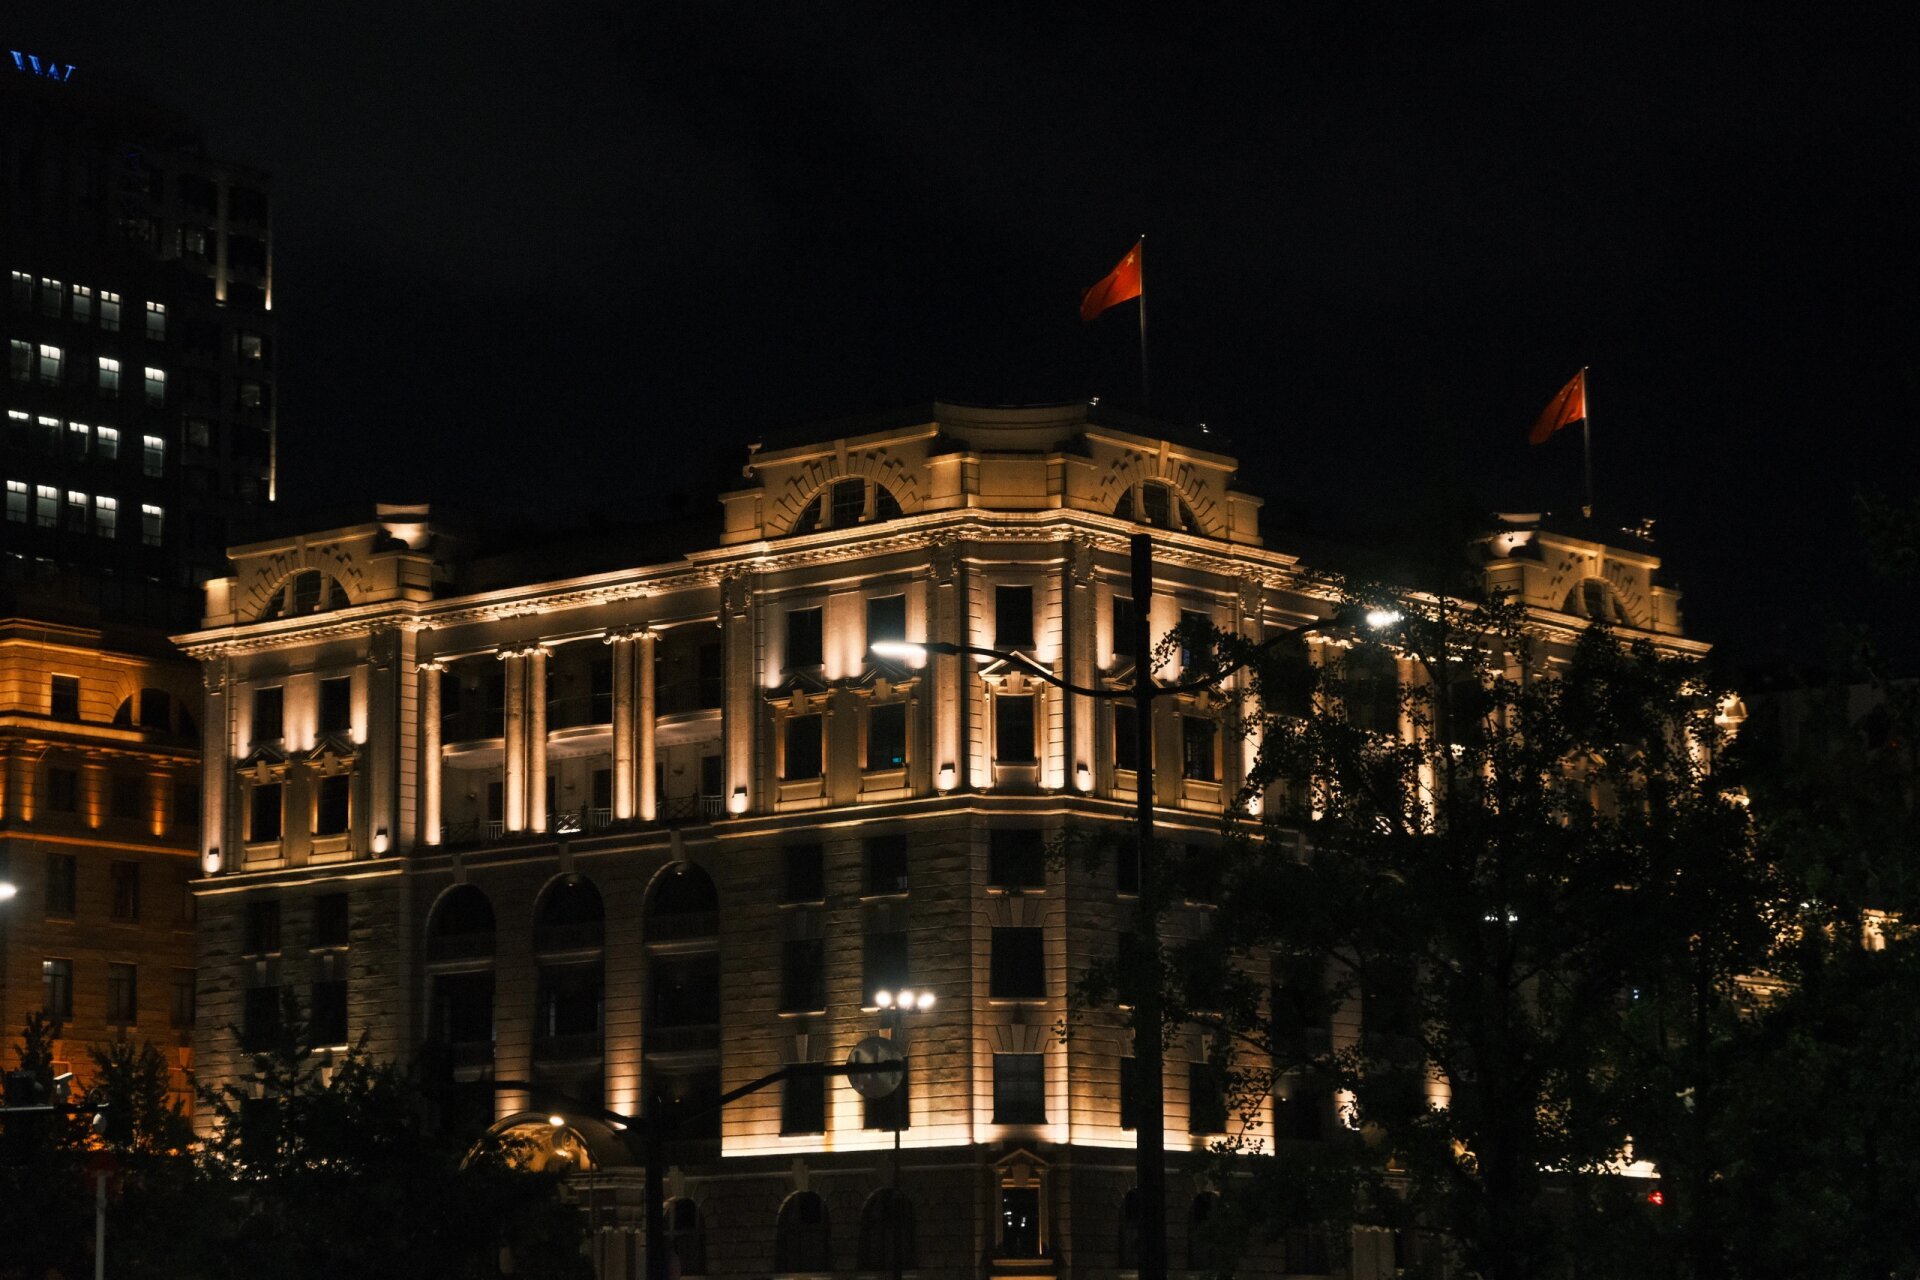 上海街景实拍 夜晚图片